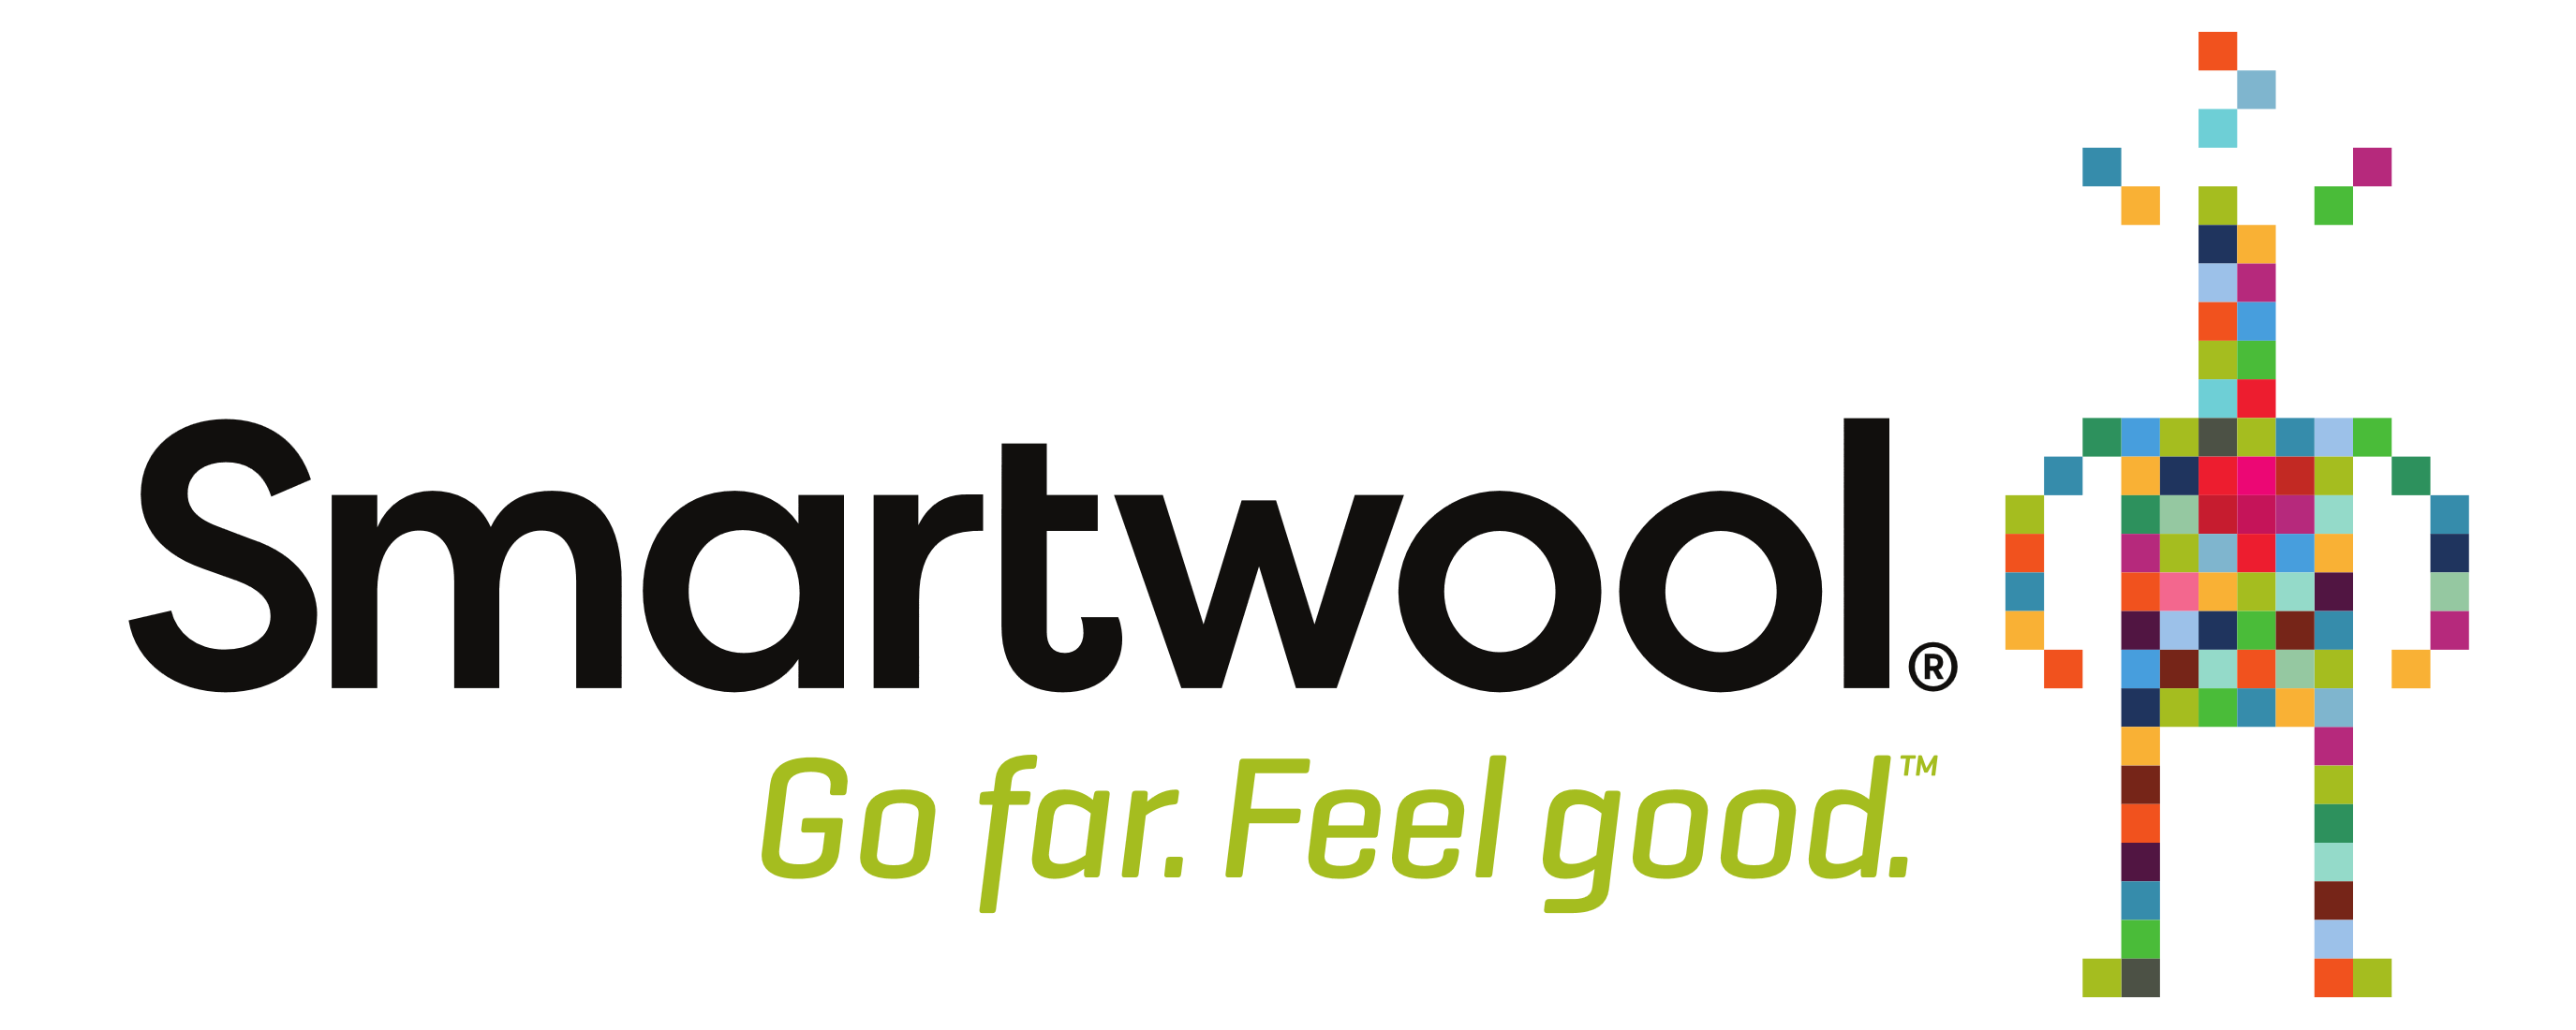 Smartwool – Logos Download